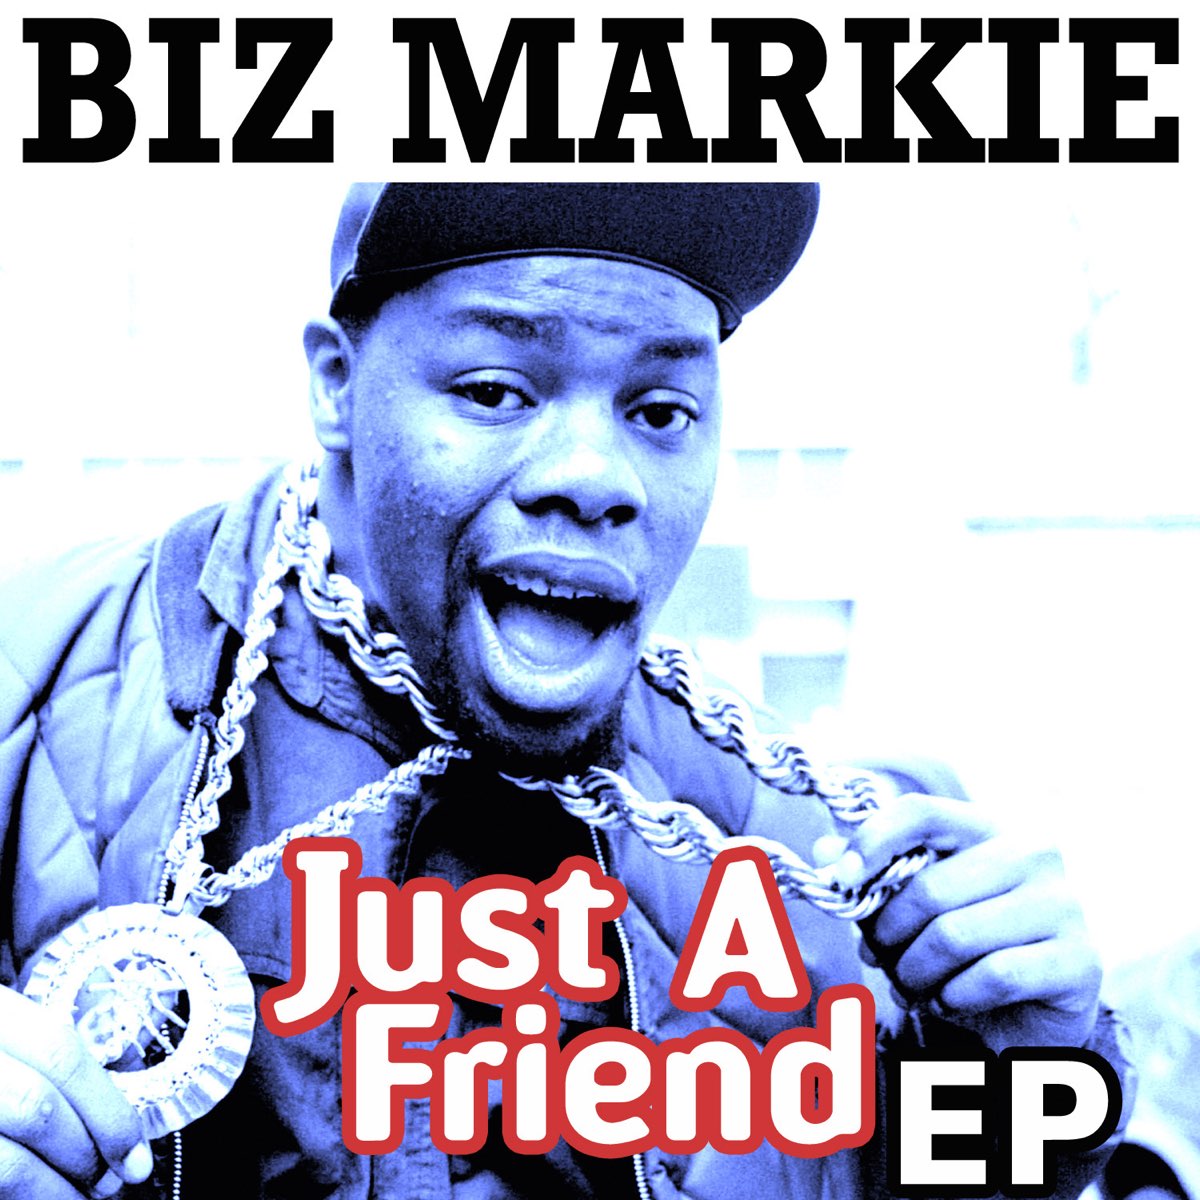 Just a Friend - EP - Album by Biz Markie - Apple Music